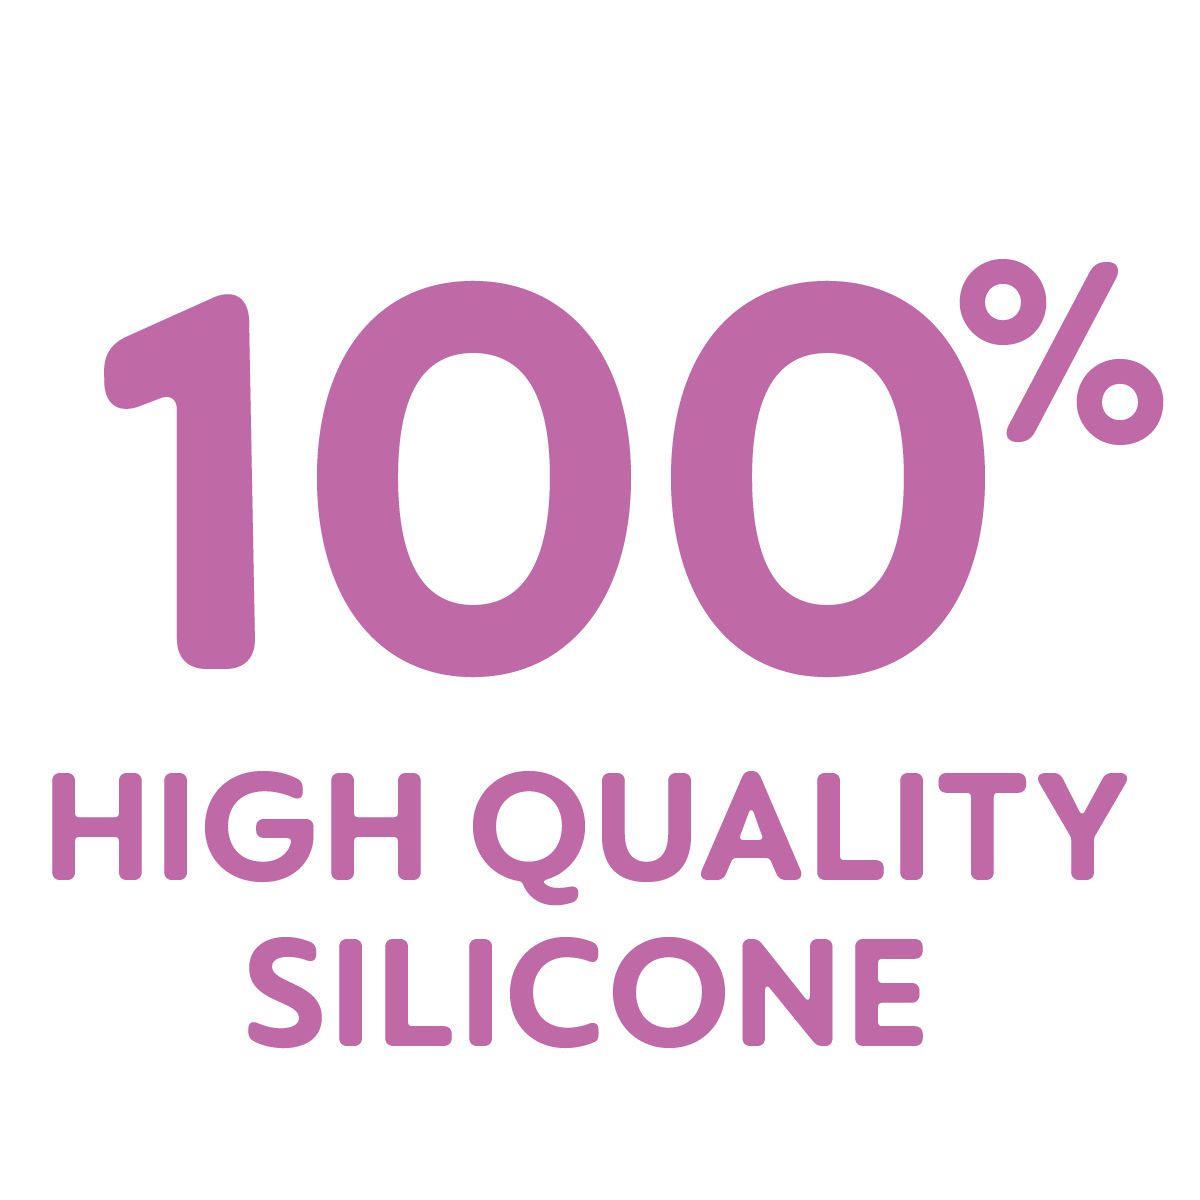 Produktet er fremstillet af 100 % silikone af høj kvalitet – meget hygiejnisk, slidstærk og sikker